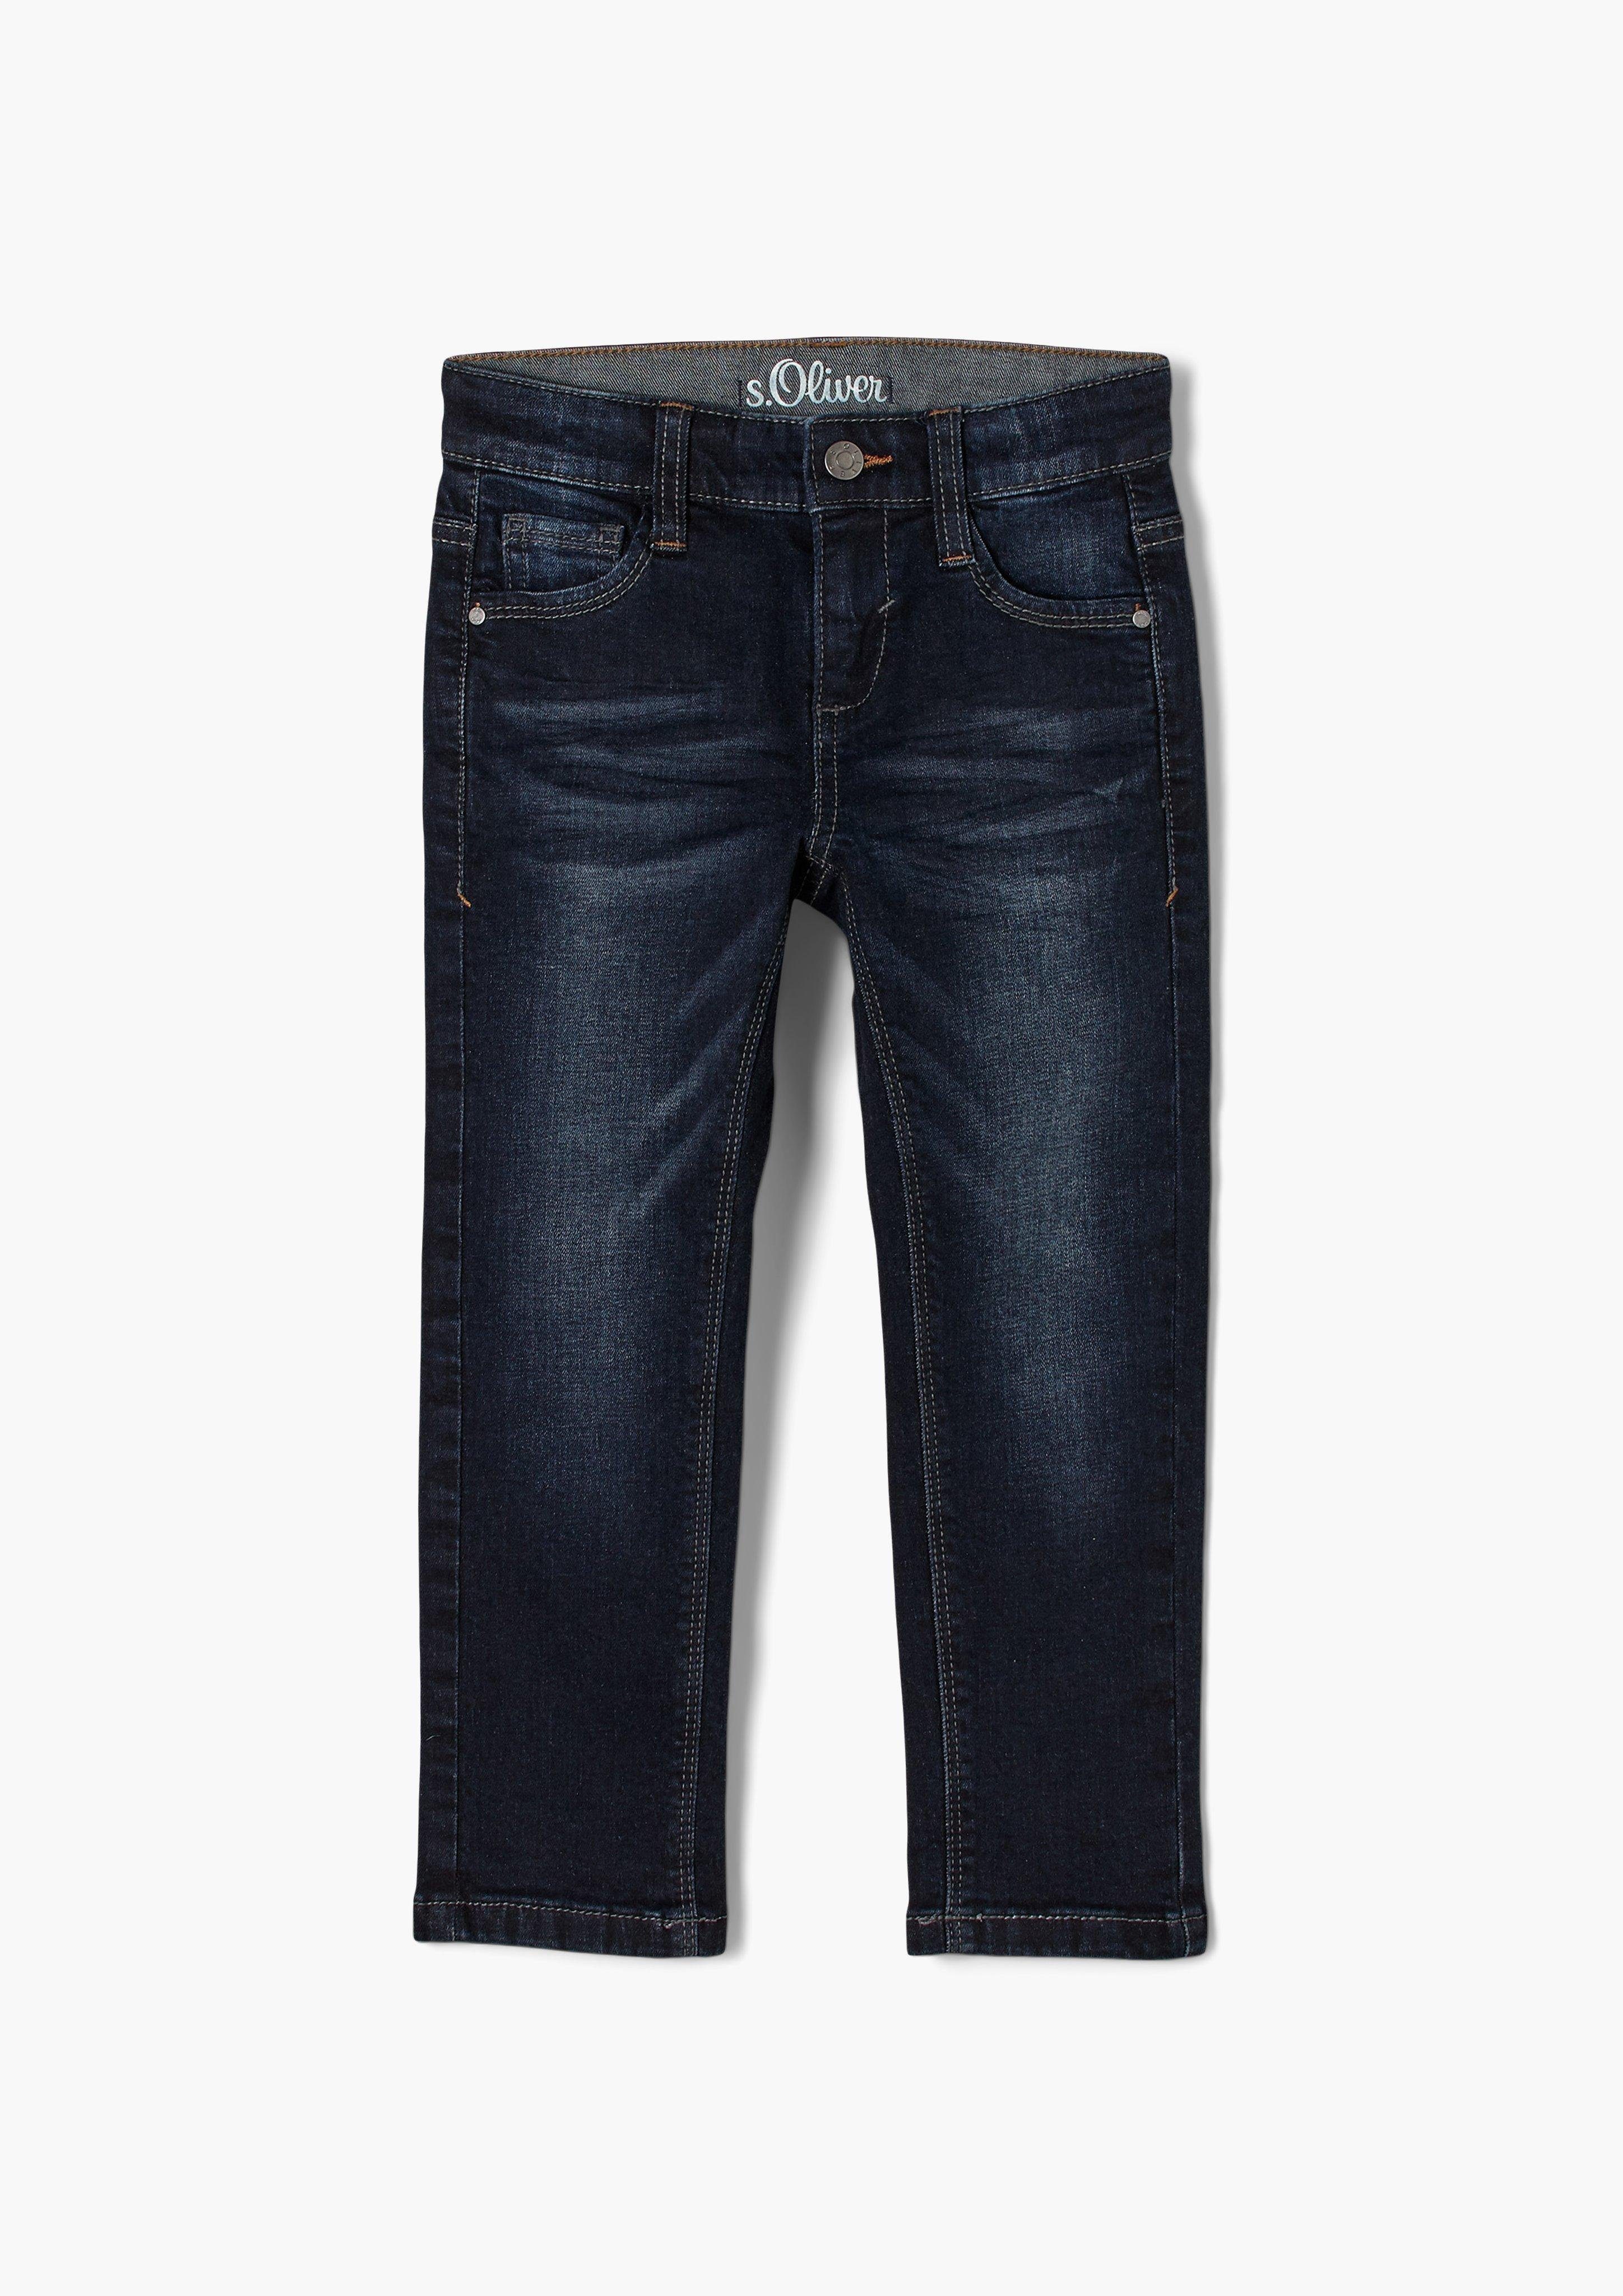 s.Oliver 5-Pocket-Jeans Jeans Pelle / Regular Fit / Mid Rise / Straight Leg  Waschung, mit Taschen im 5-Pocket-Design, mit Hakenverschluss, mit  Reißverschluss | Straight-Fit Jeans